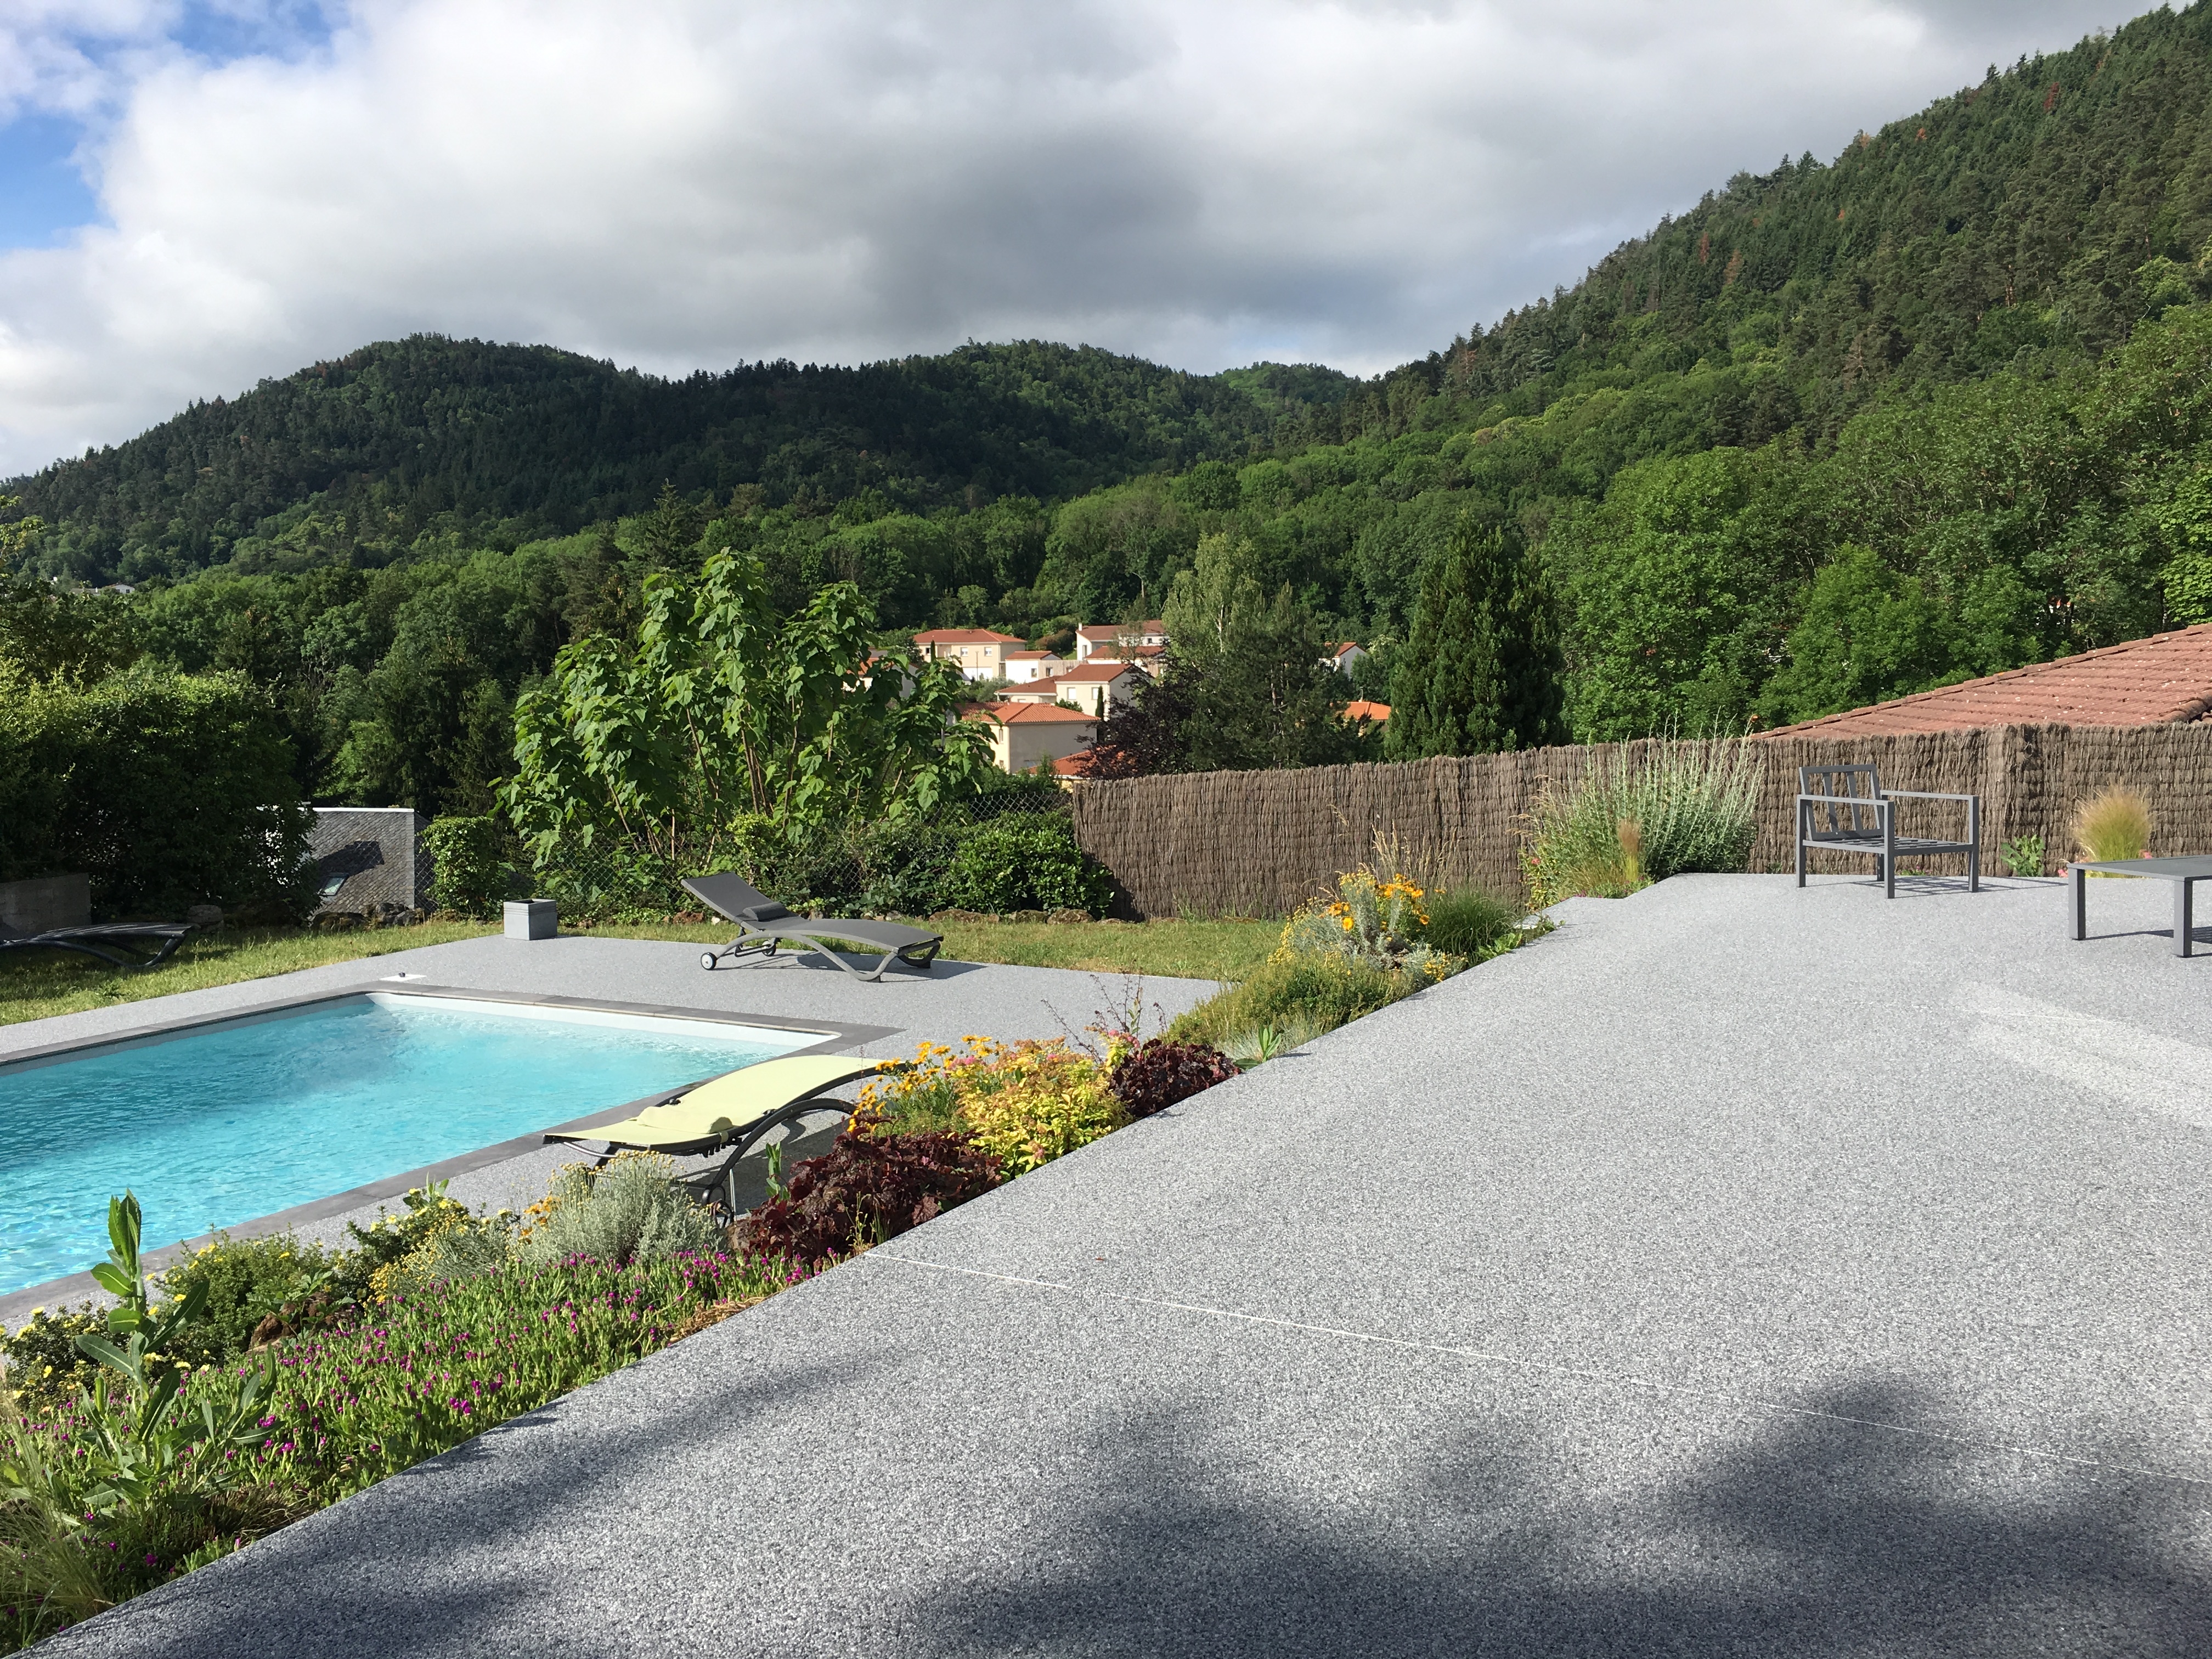 Conception Plage de piscine en Hydrostar et dallage - Puy-de-Dme cre le 25/07/2019